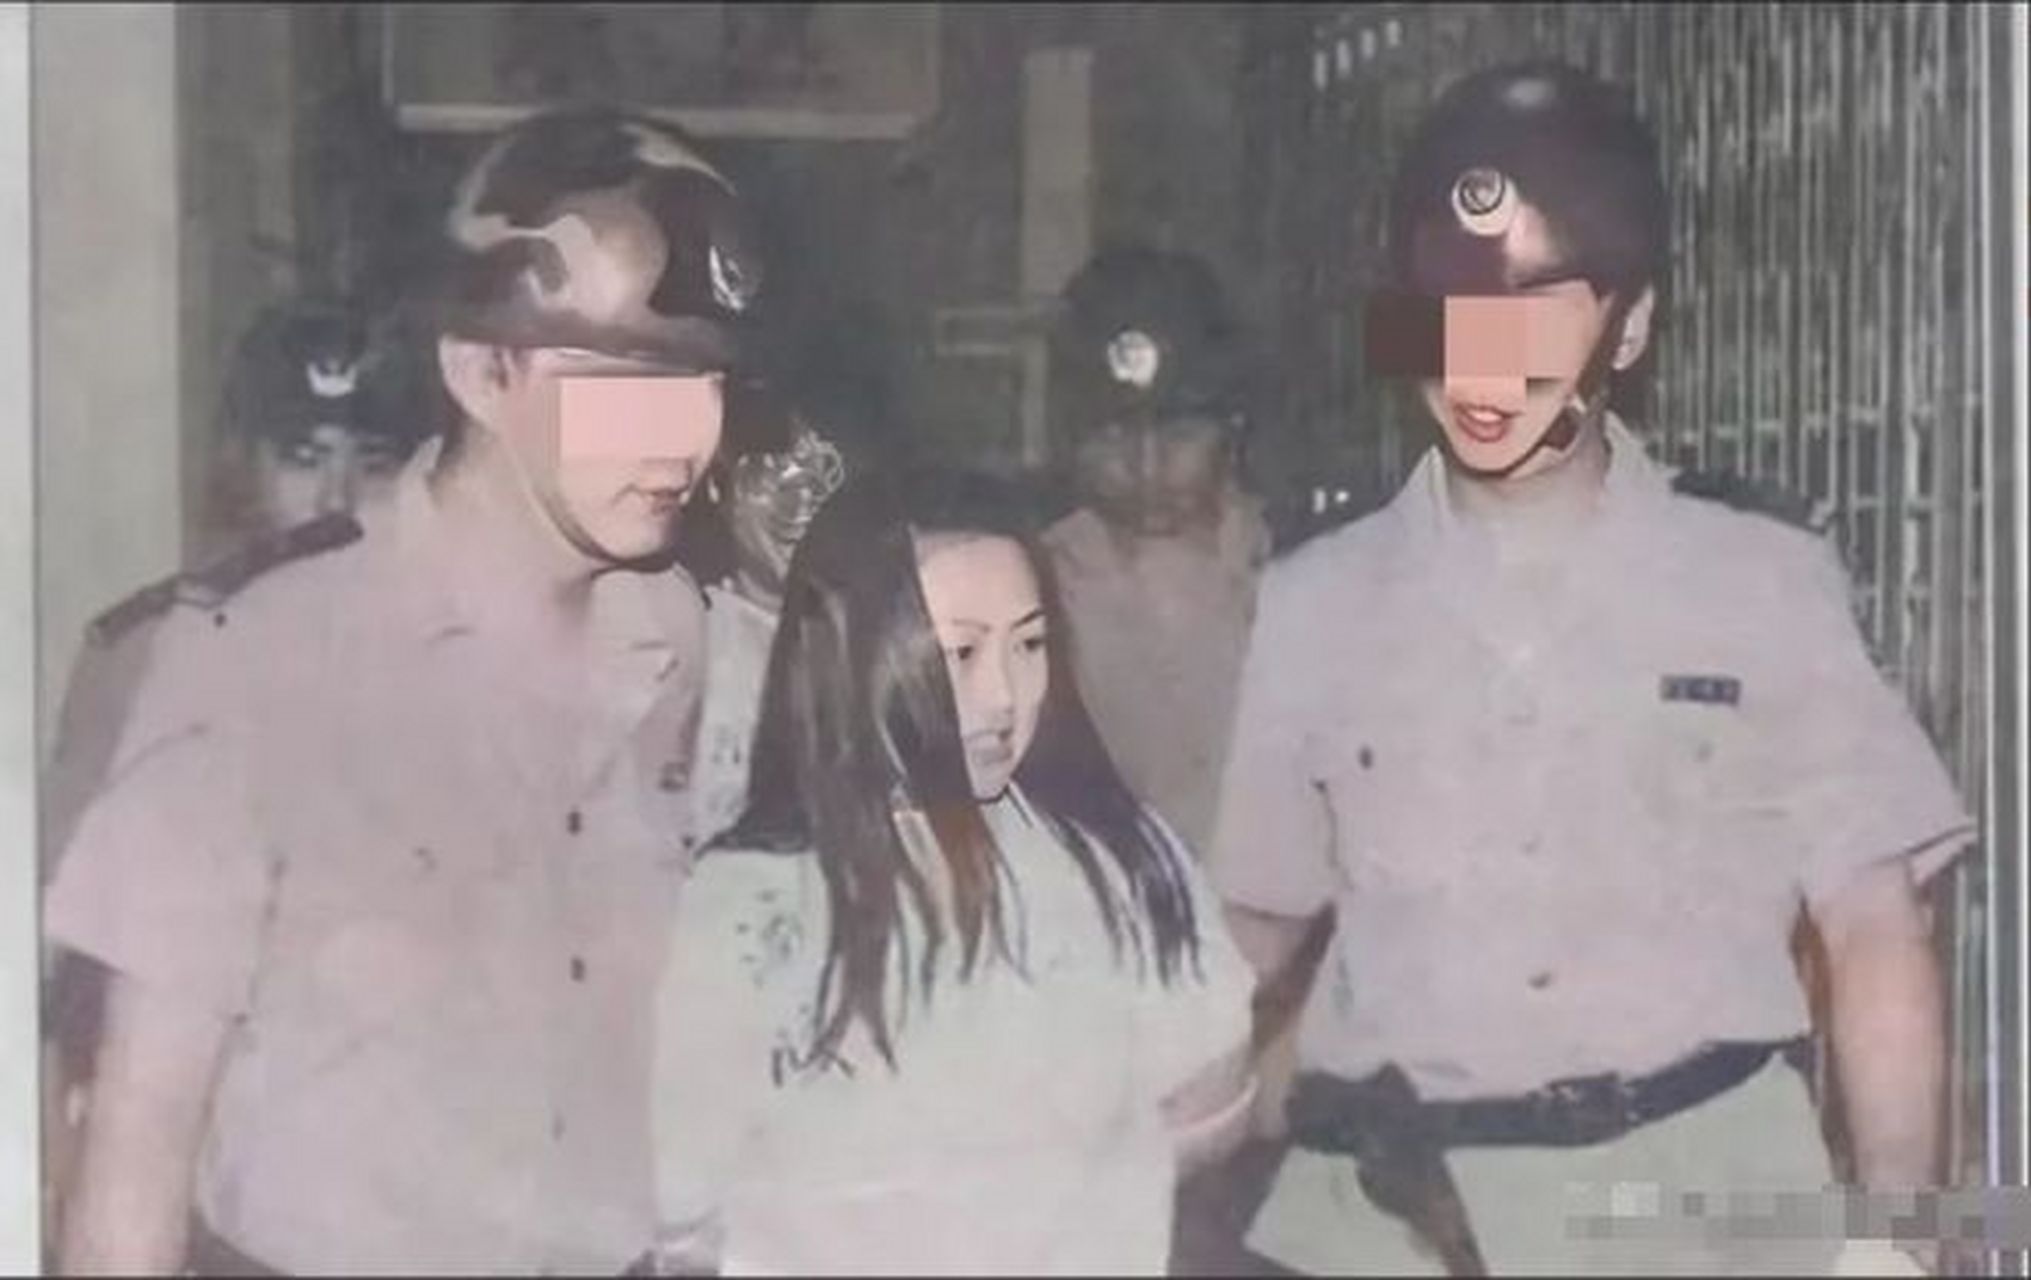 女毒贩被执行注射死刑图片